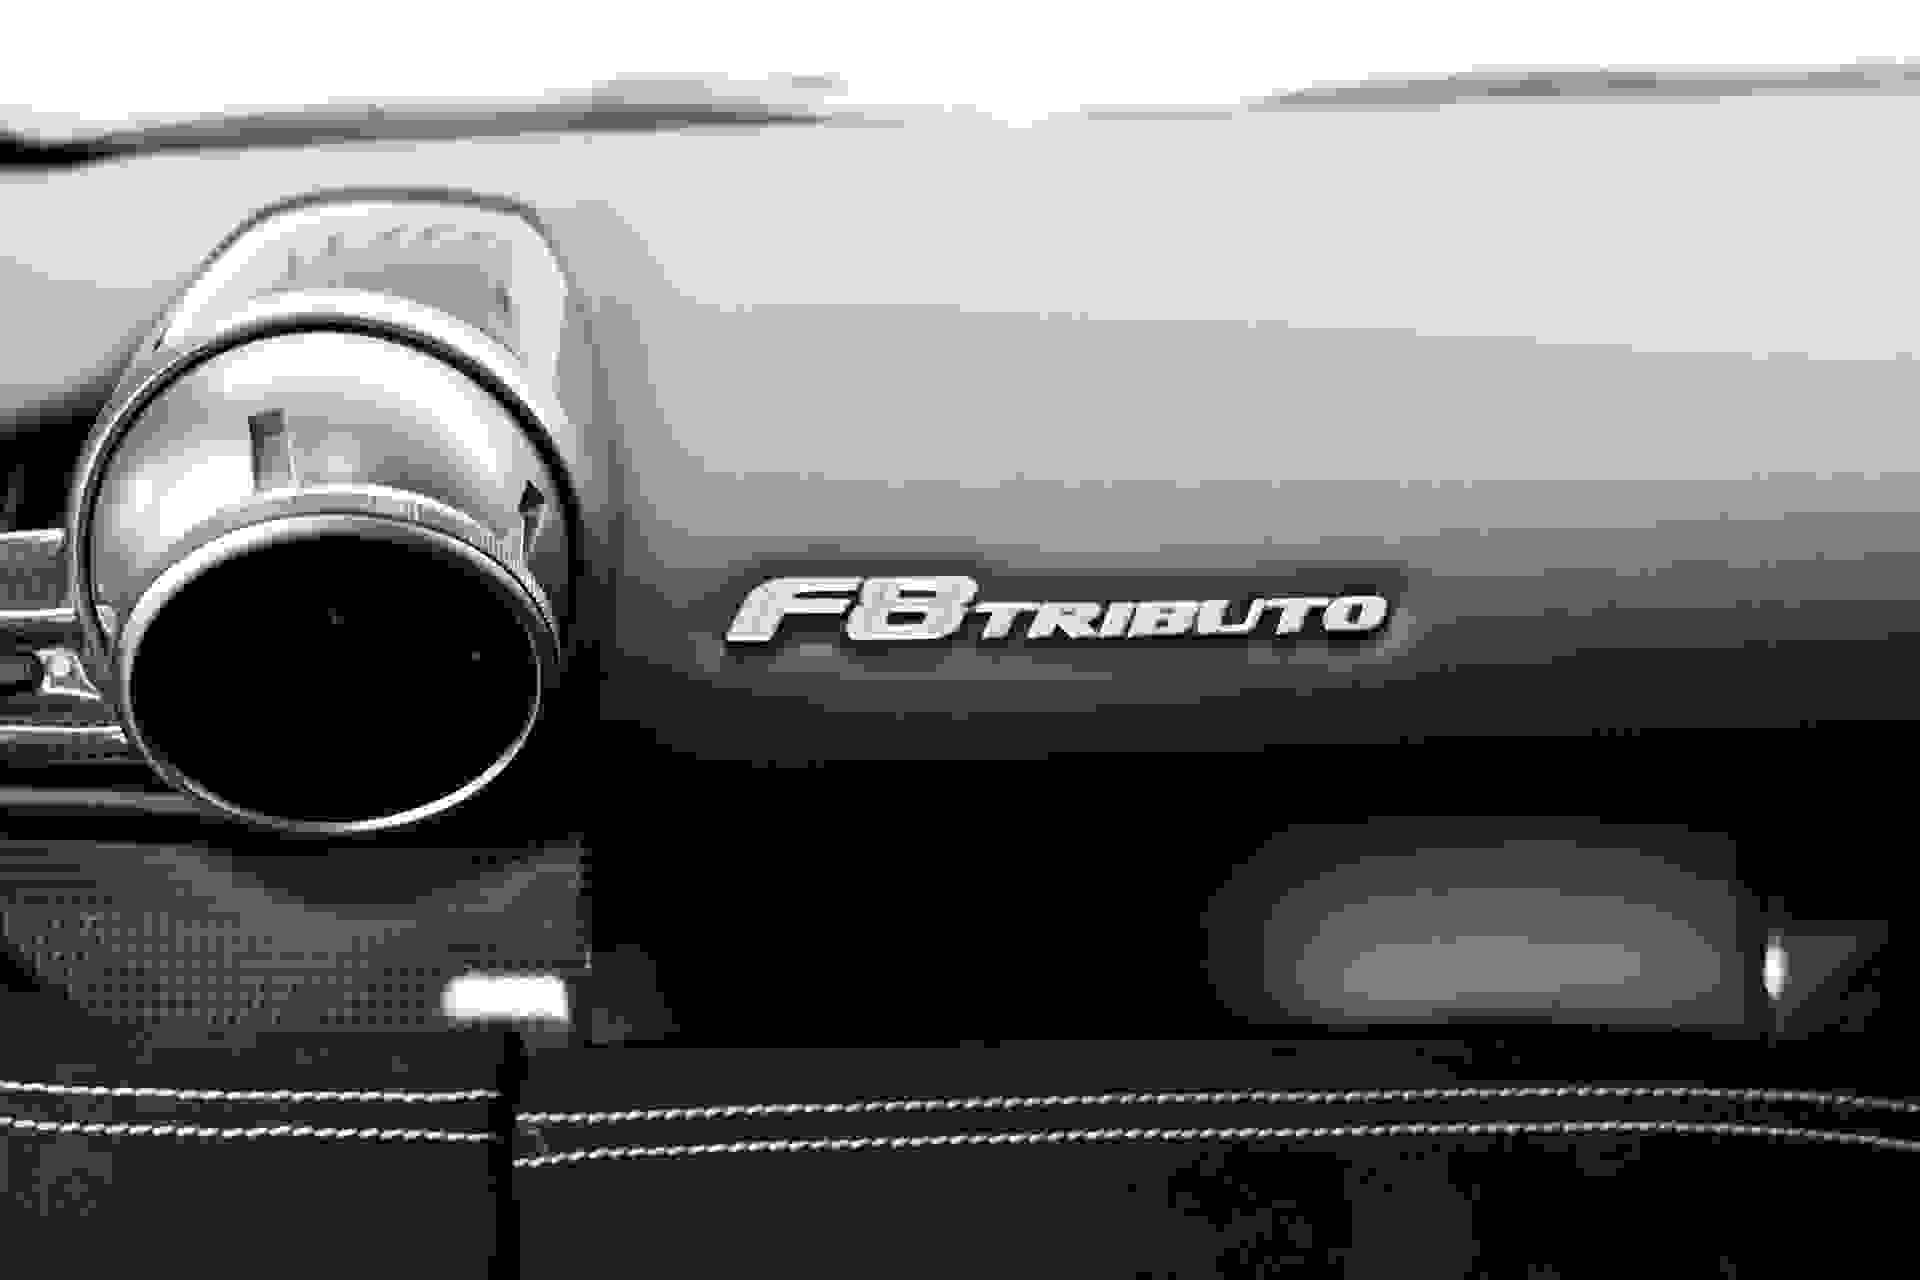 Ferrari F8 Photo b4cc263b-b73e-470c-9273-6833b8ed07a6.jpg